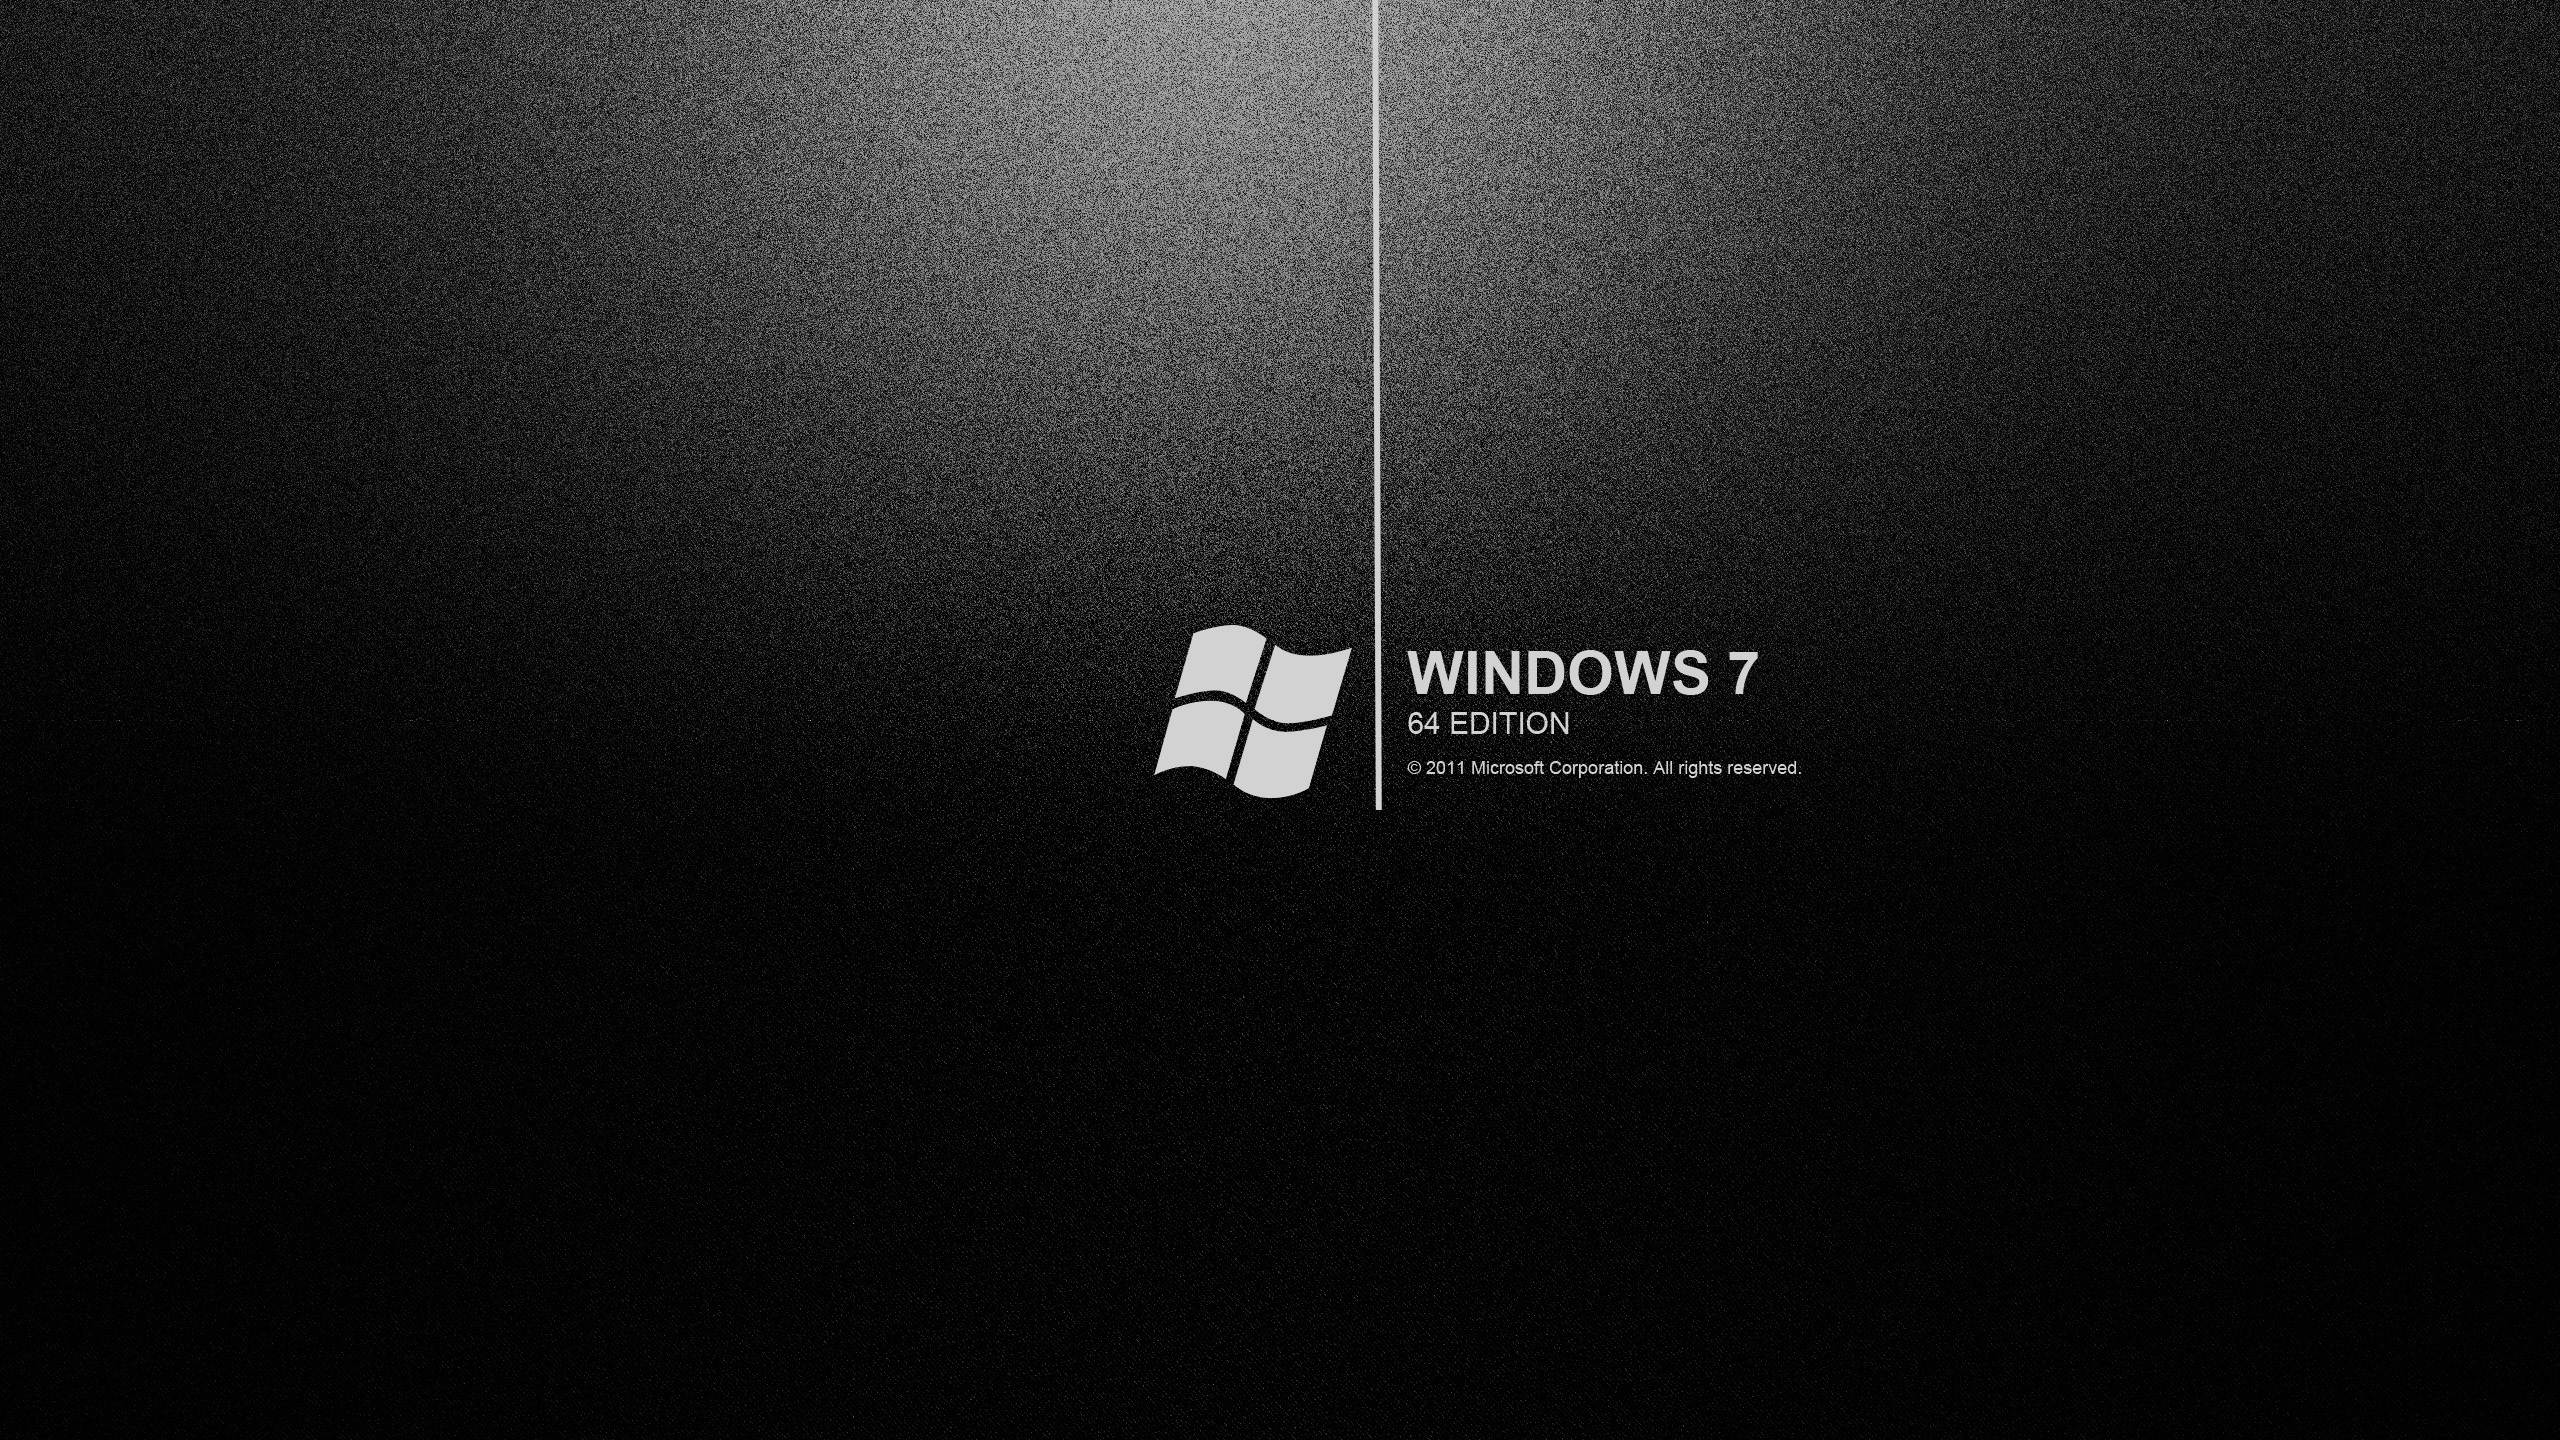 Hình nền Windows 7 màu đen độc đáo sẽ mang đến cho bạn một trải nghiệm thú vị và độc đáo khi sử dụng máy tính. Hãy xem hình ảnh liên quan để cảm nhận sự khác biệt của nó.